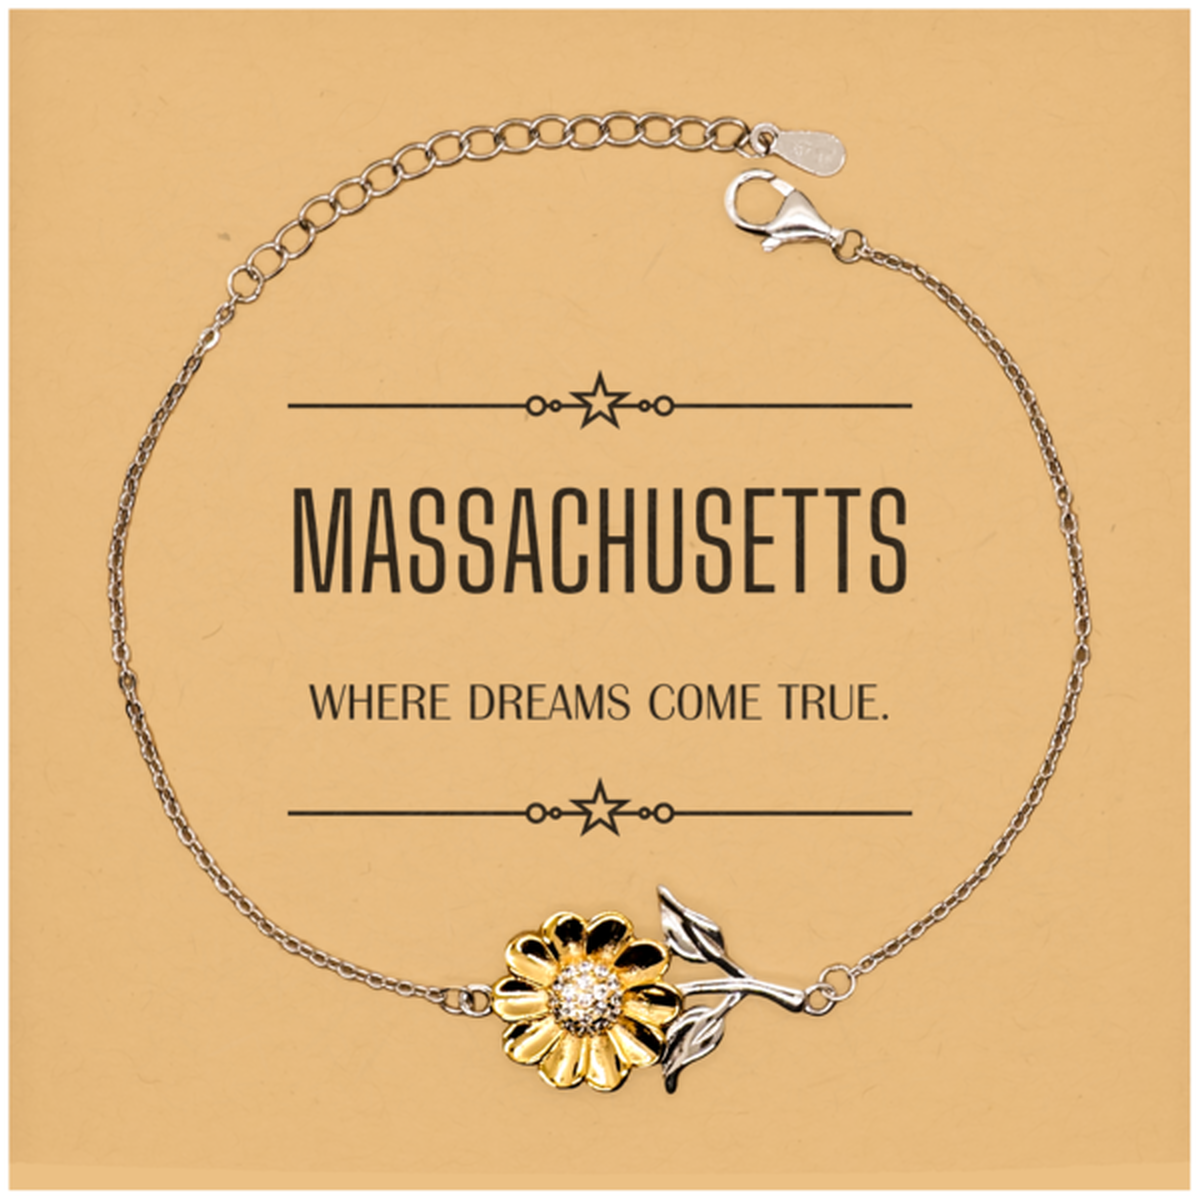 Love Massachusetts State Sunflower Bracelet, Massachusetts Where dreams come true, Birthday Christmas Inspirational Gifts For Massachusetts Men, Women, Friends